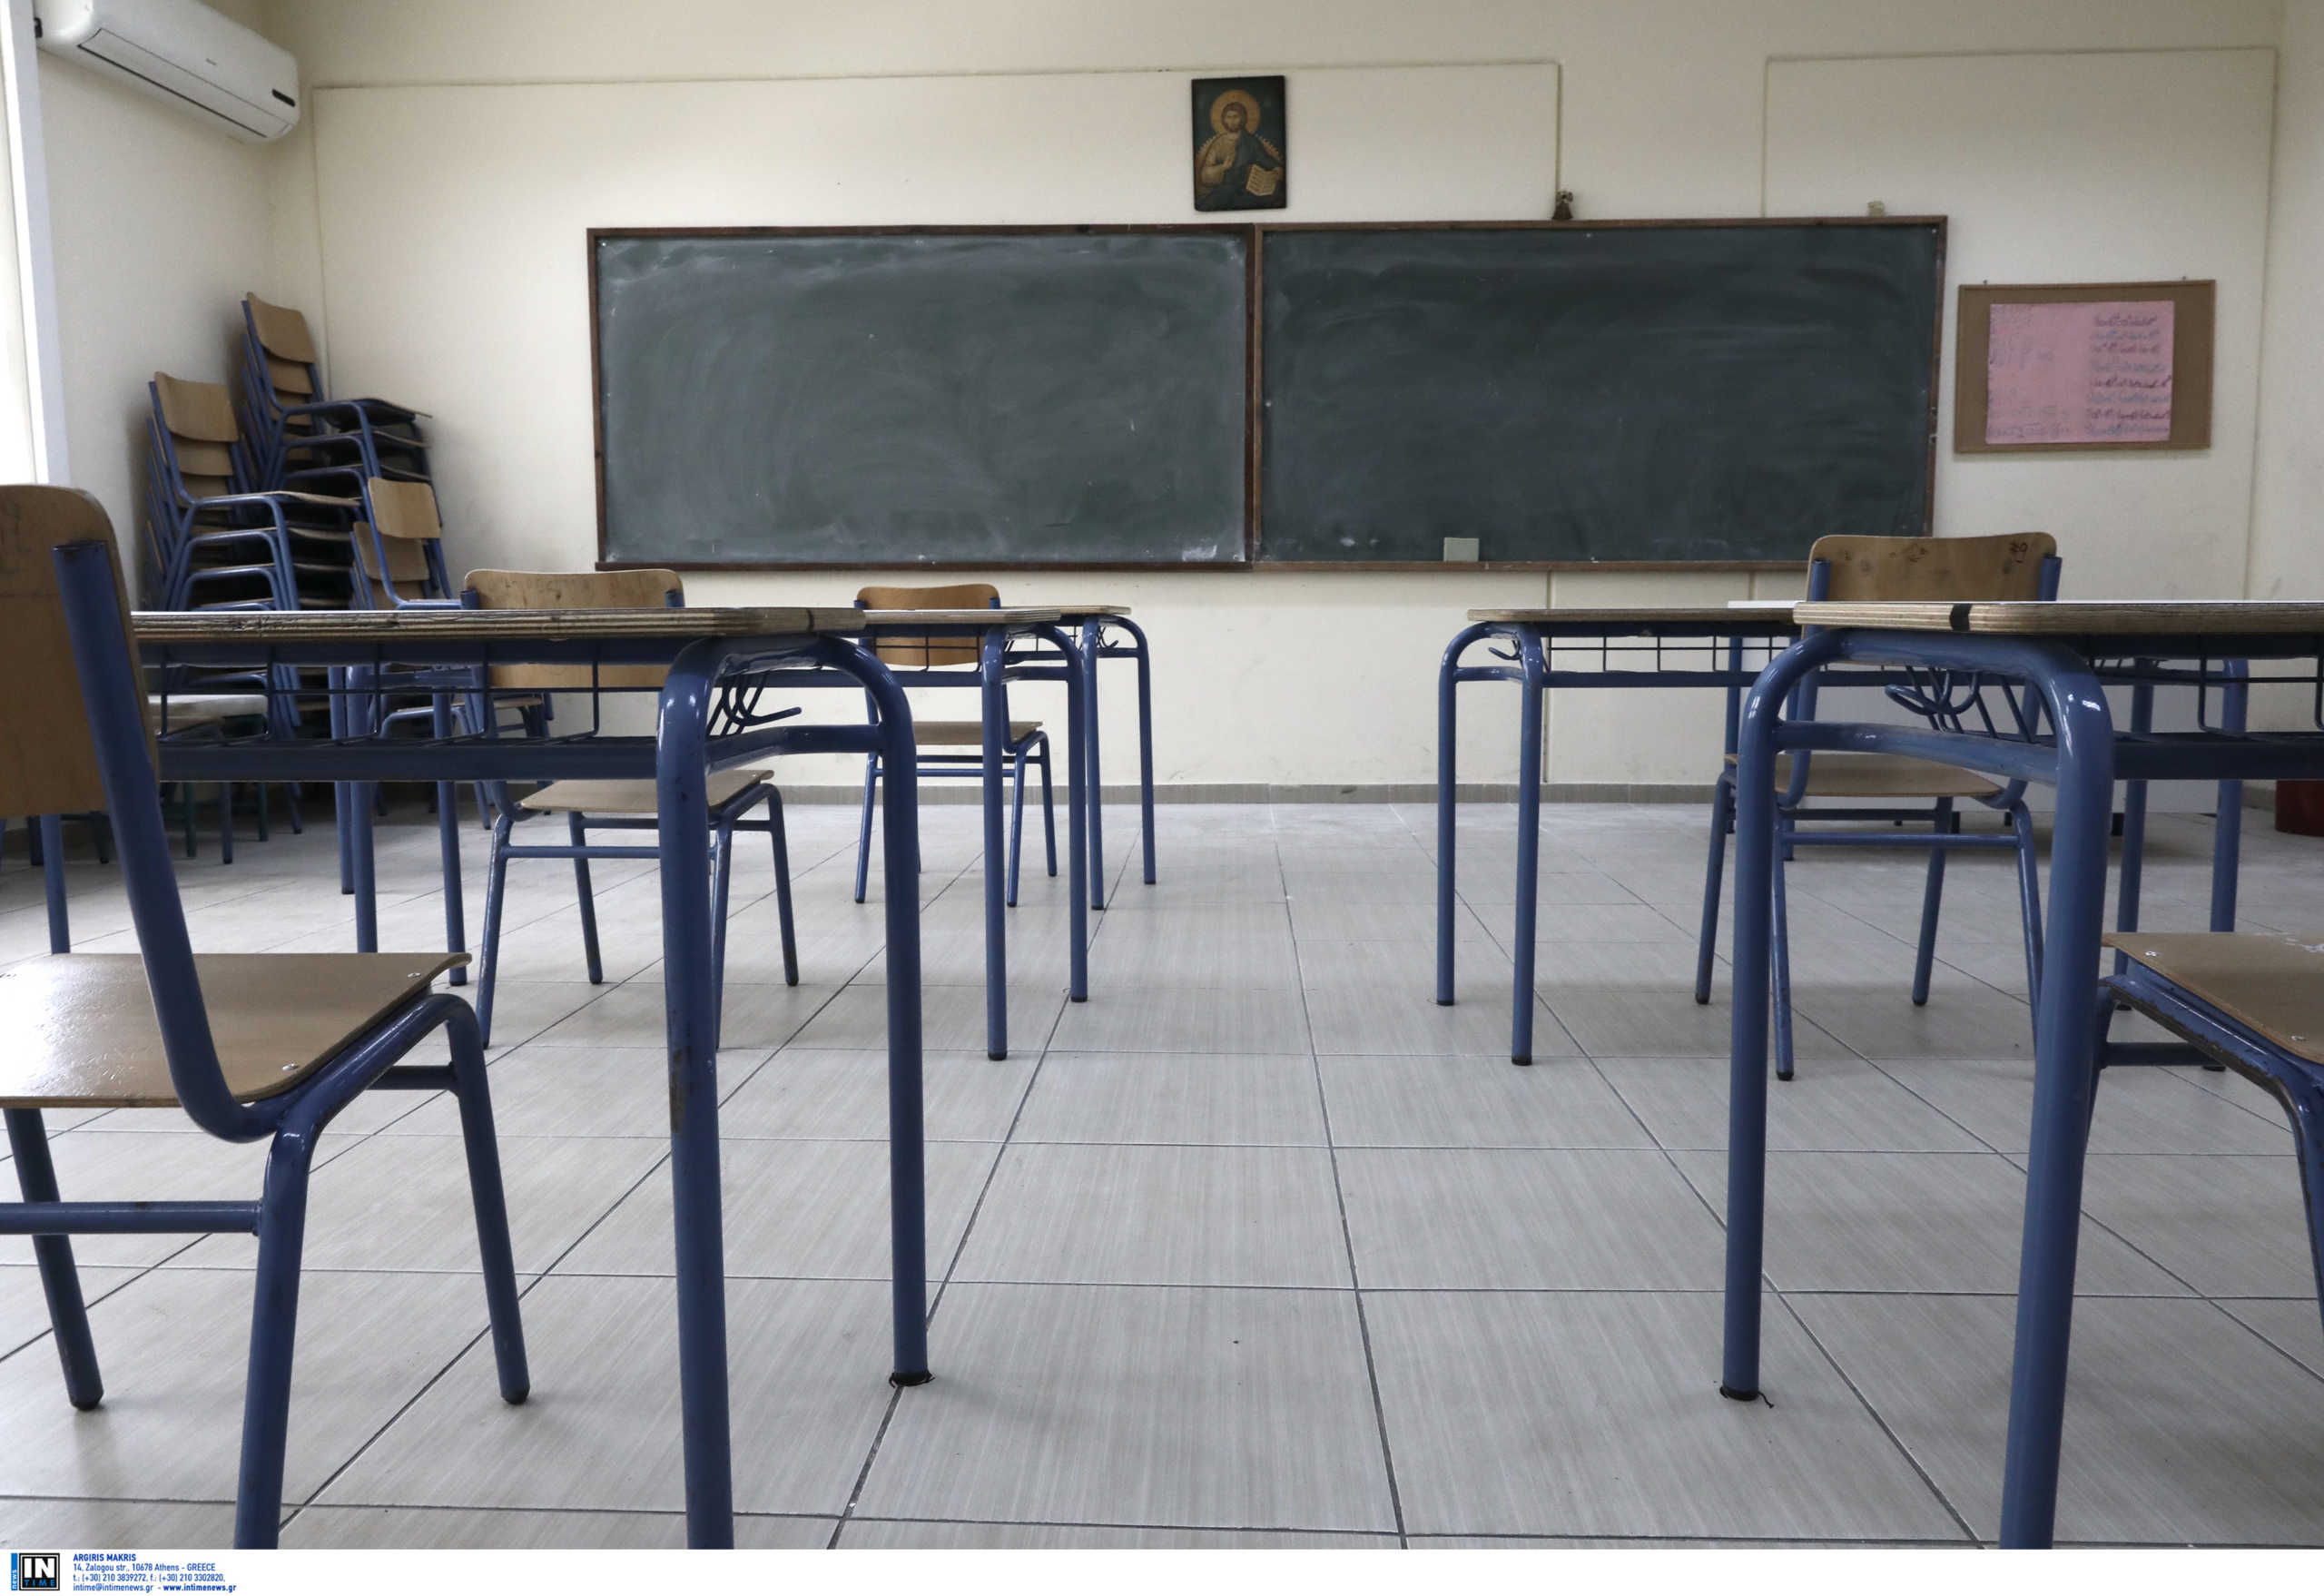 Επ. Παιδείας: «Αποθήκες μετατρέπονται σε αίθουσες διδασκαλίας»